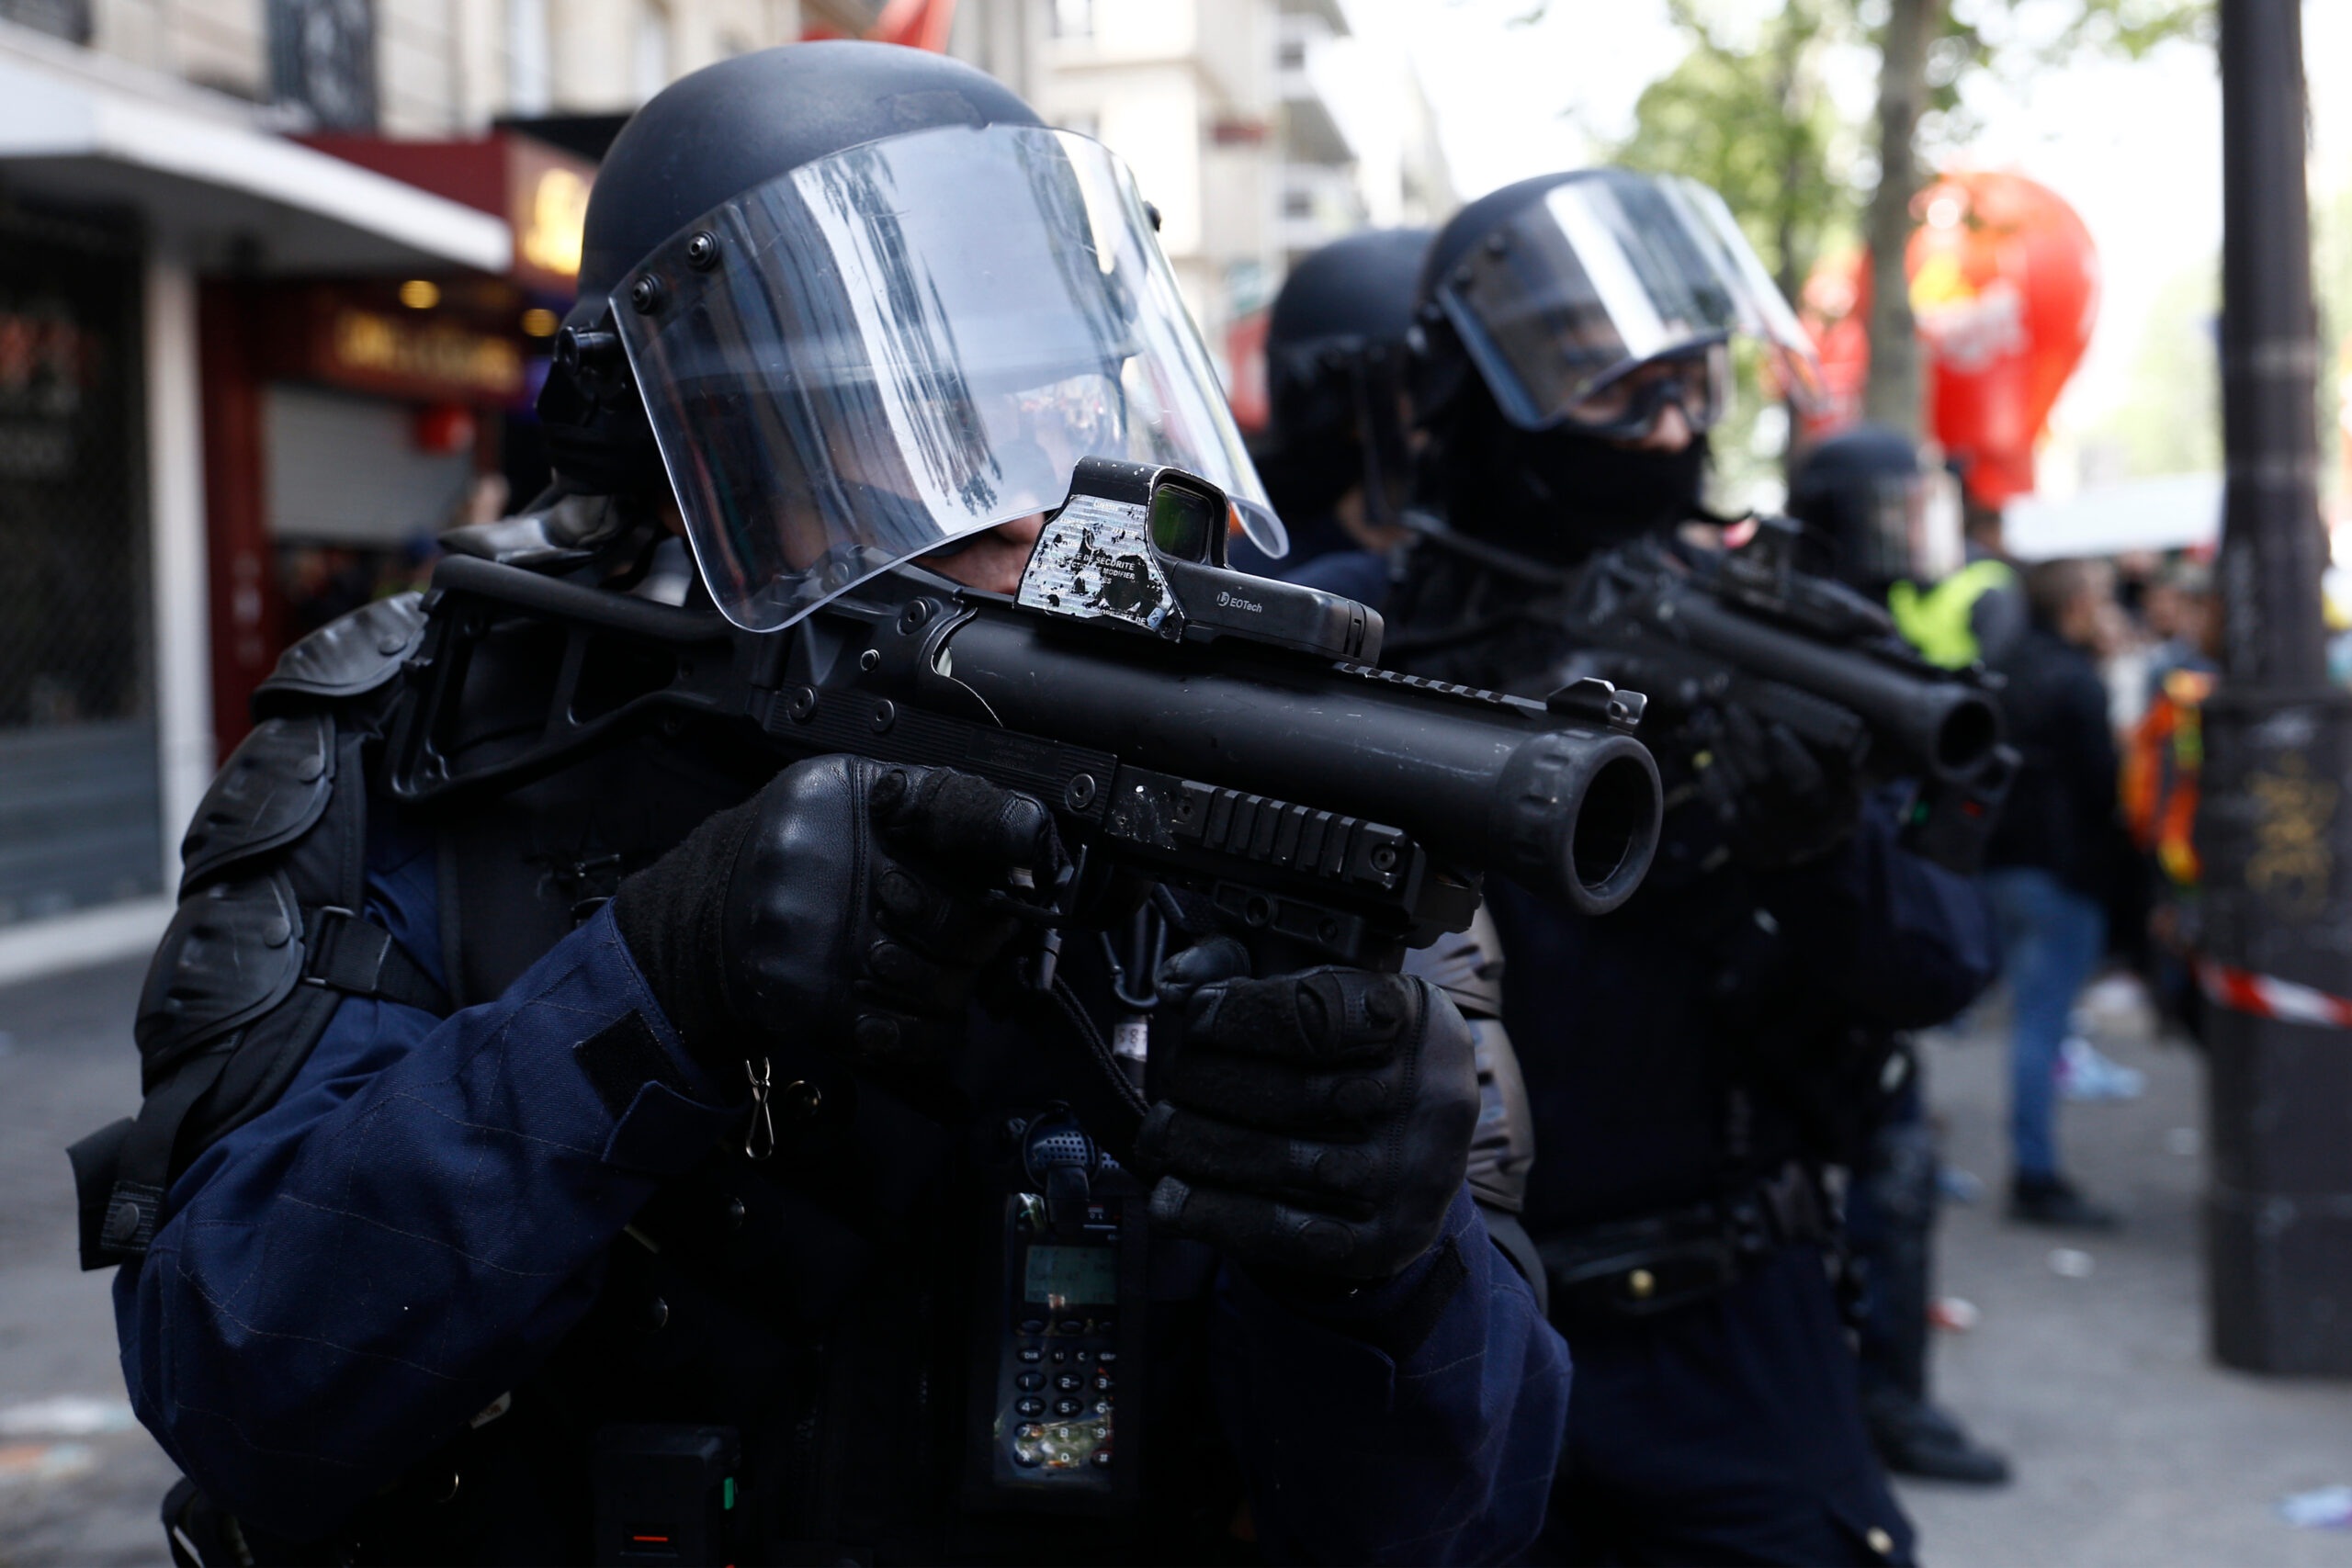 Tod nach Polizeischuss während der Revolte in Frankreich: Mohamed filmte eine Festnahme